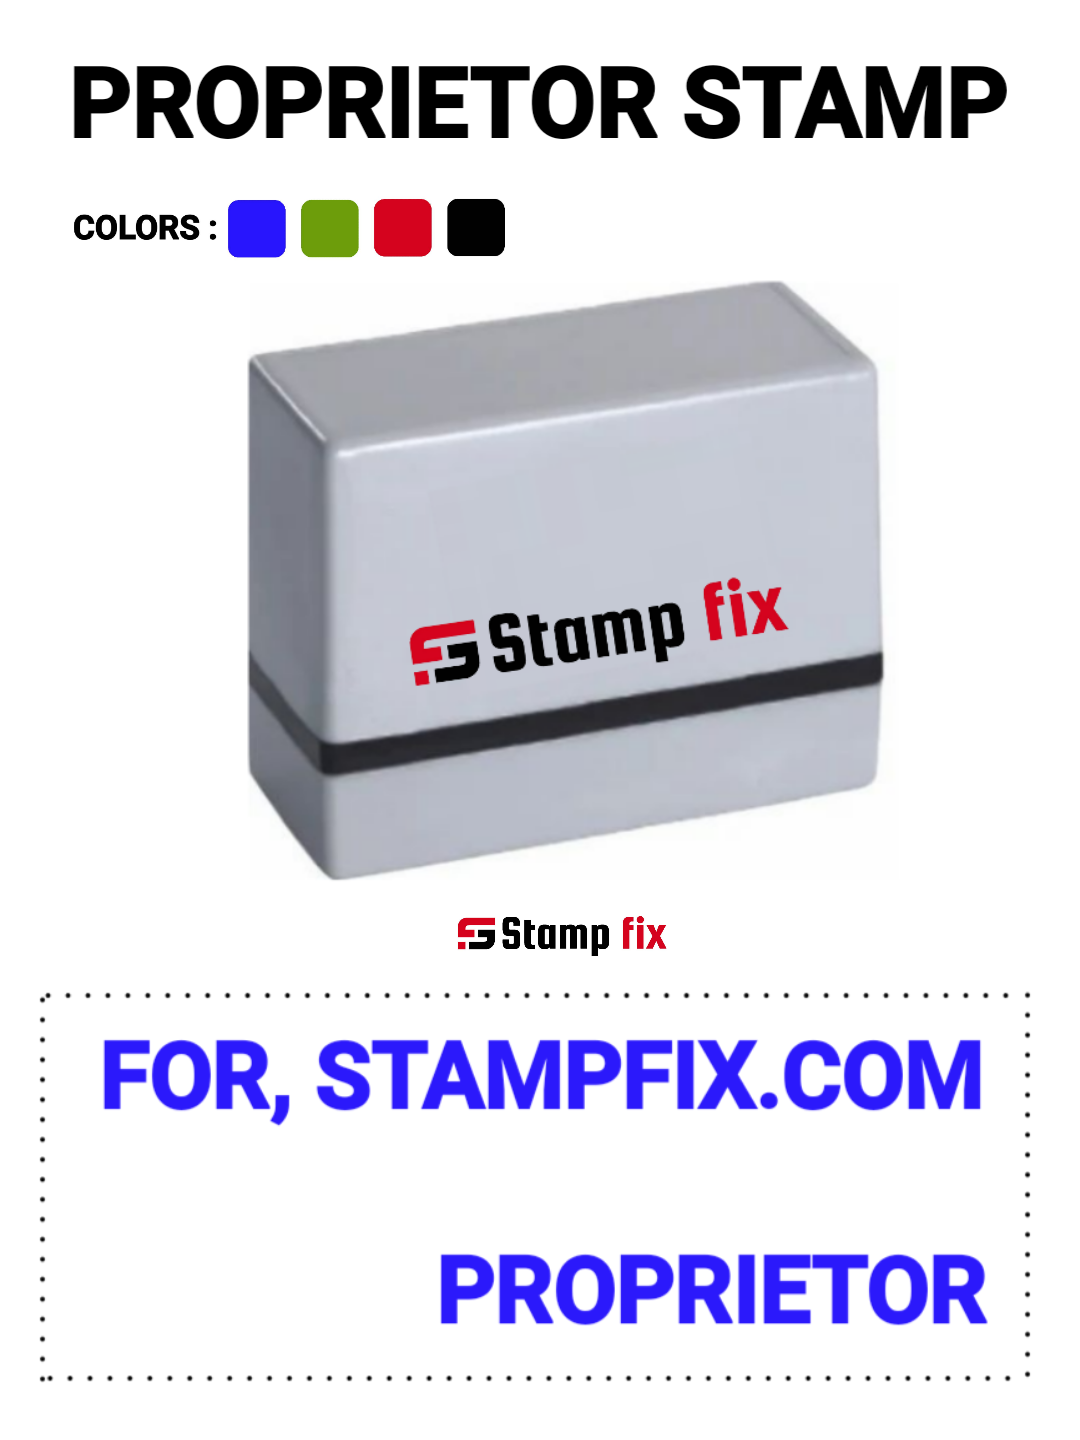 Proprietor stamp, Self ink stamp, pre ink stamp, sun stamp, rubber stamp, nylon stamp, polymer stamp